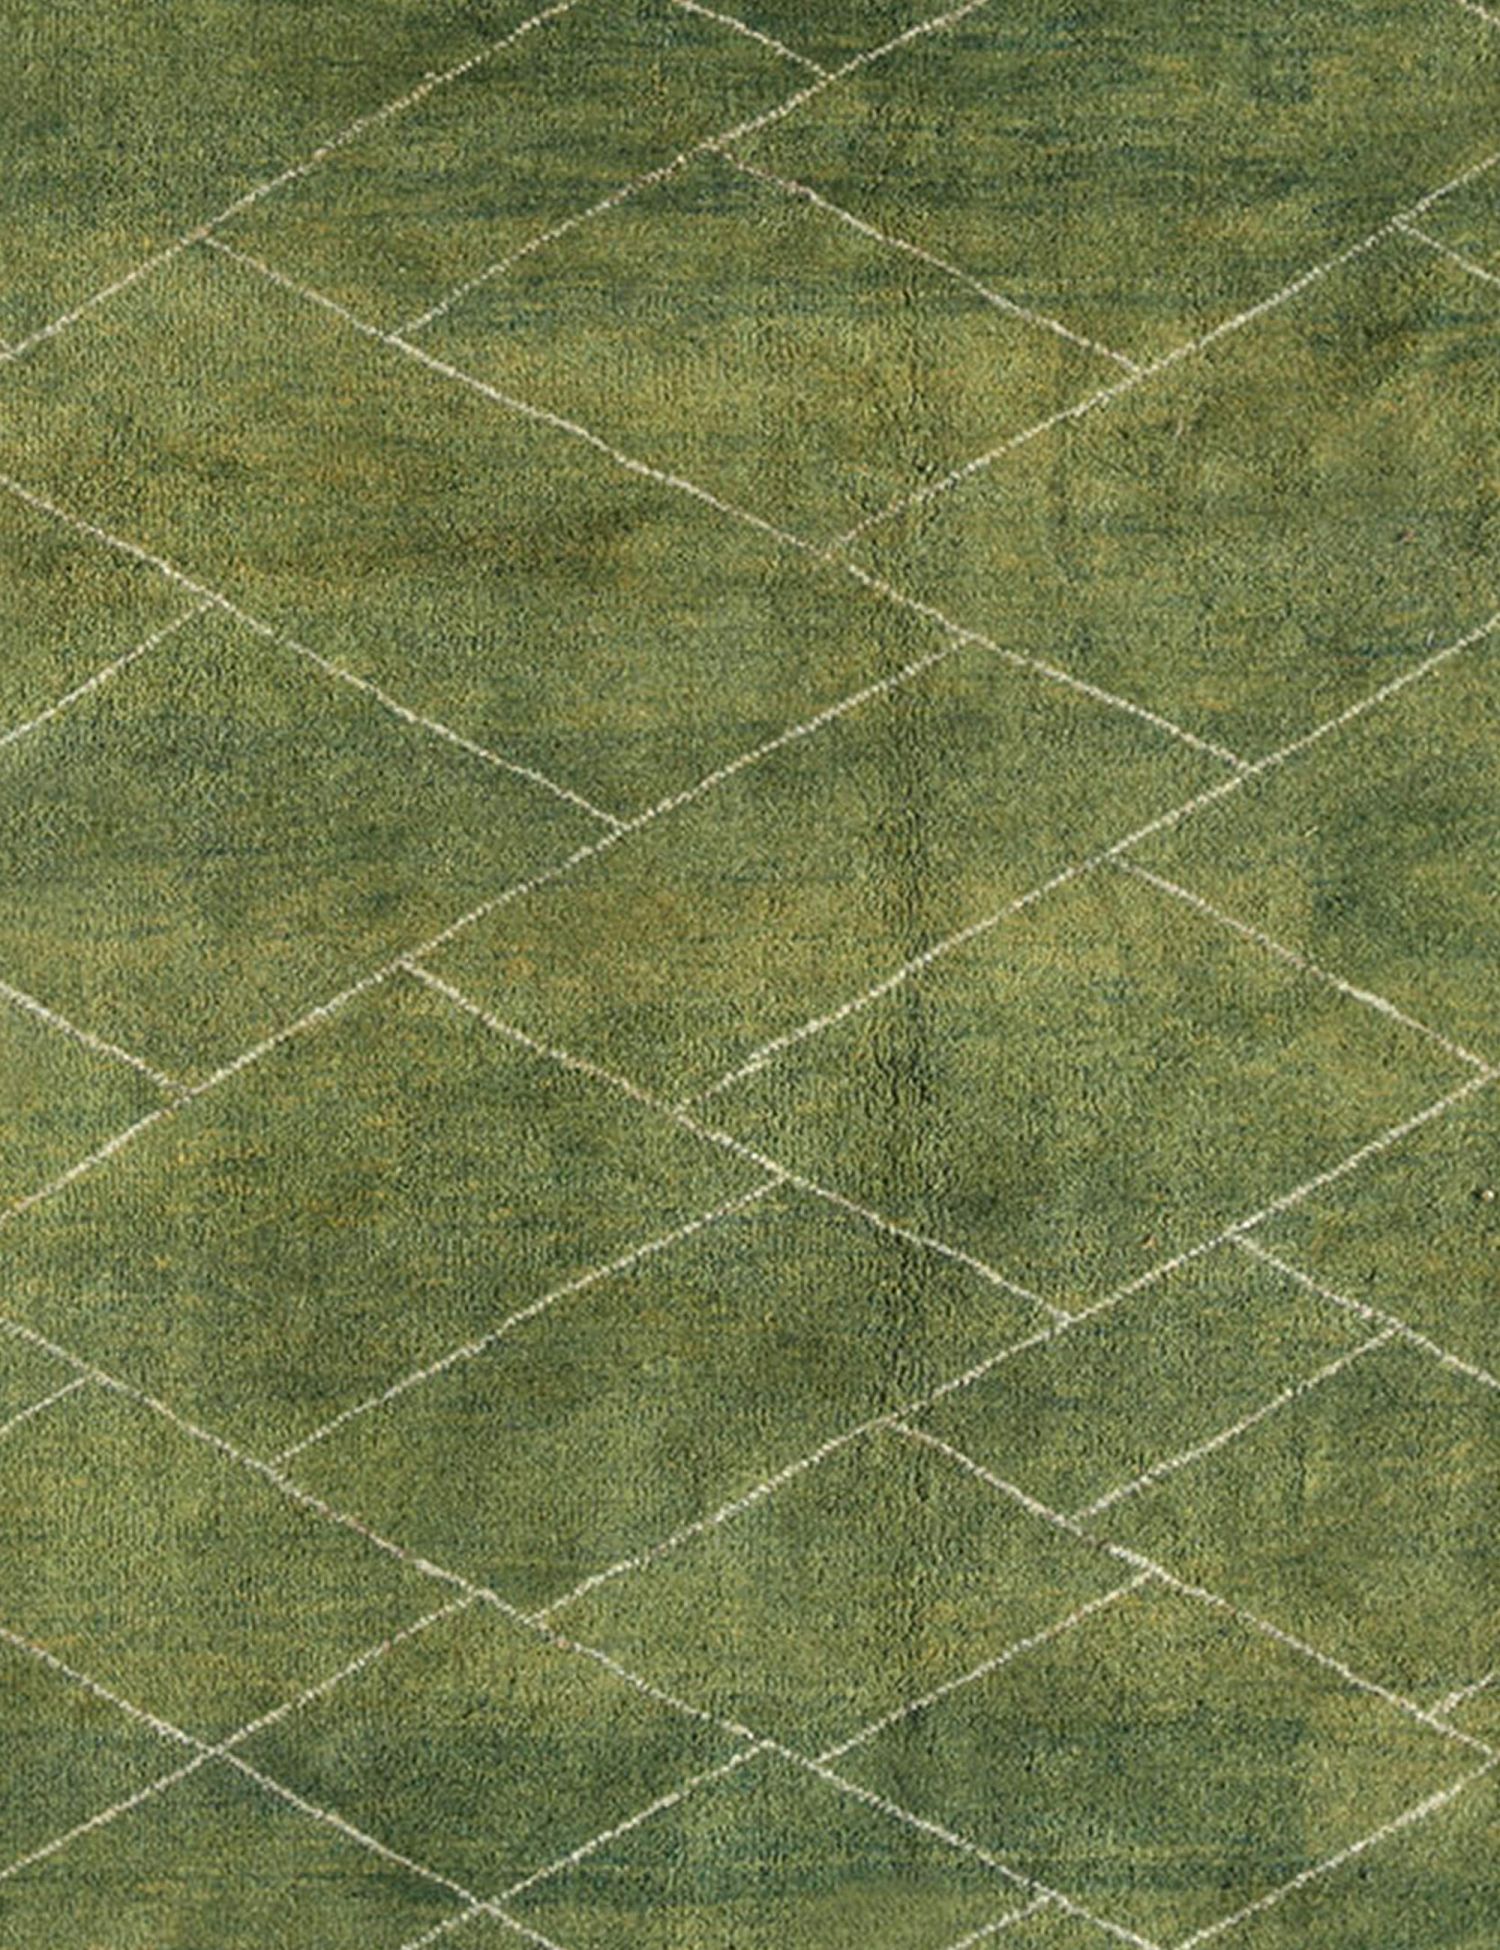 Persischer Gabbeh  grün <br/>194 x 194 cm